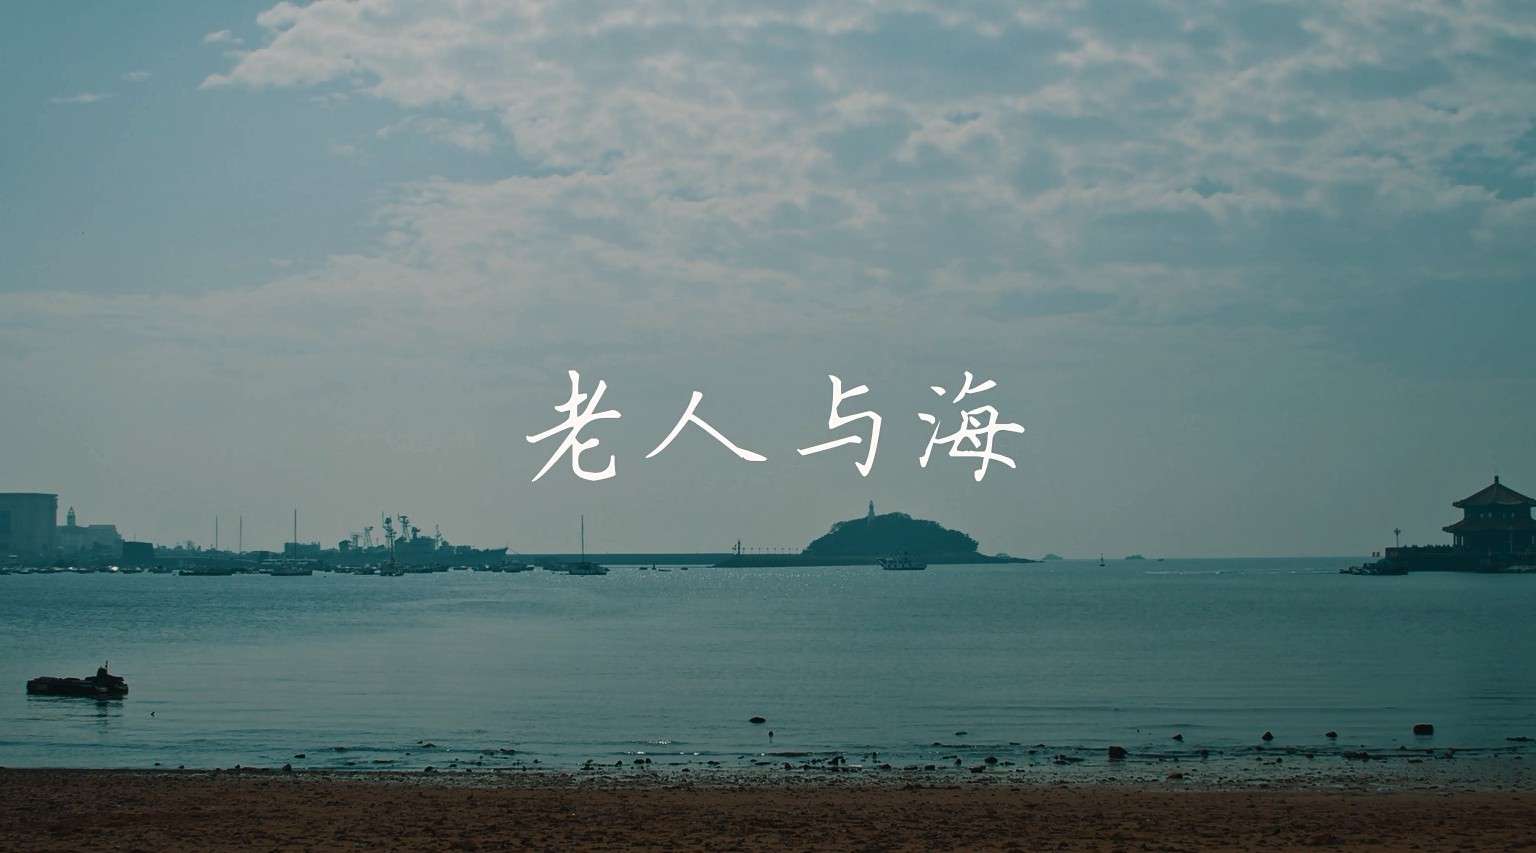 河北传媒学院 影视摄影与制作专业作品《老人与海》